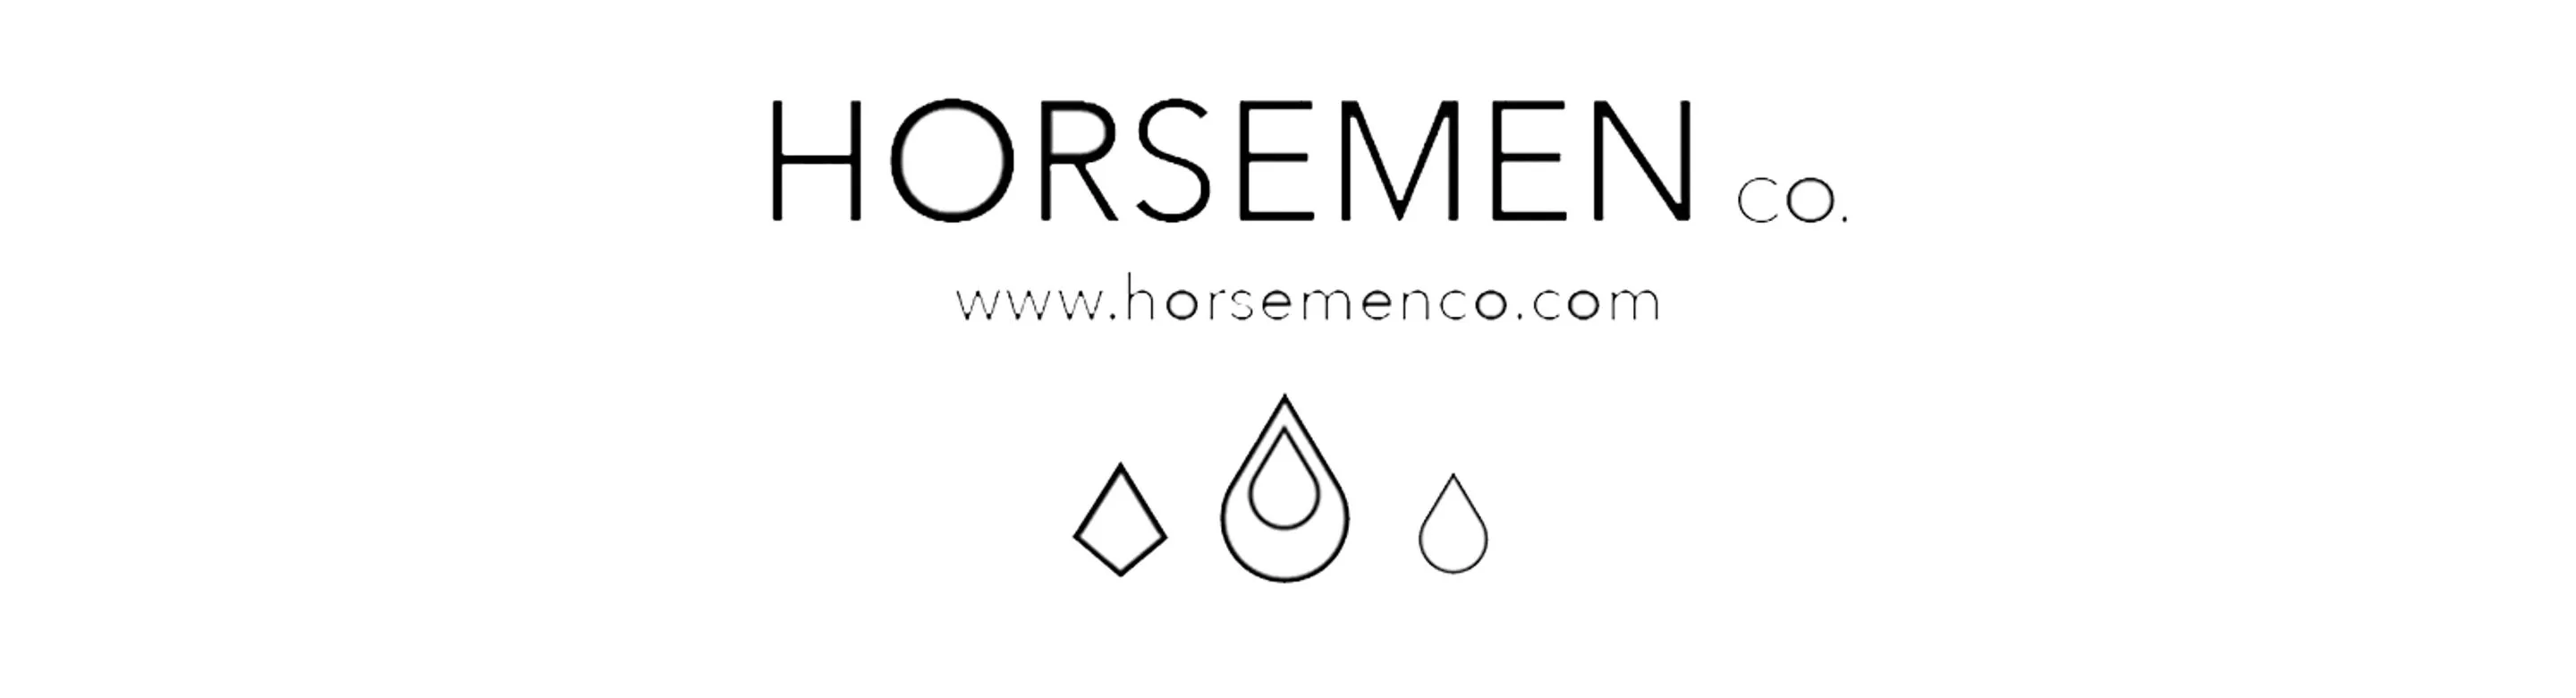 Horsemen Co